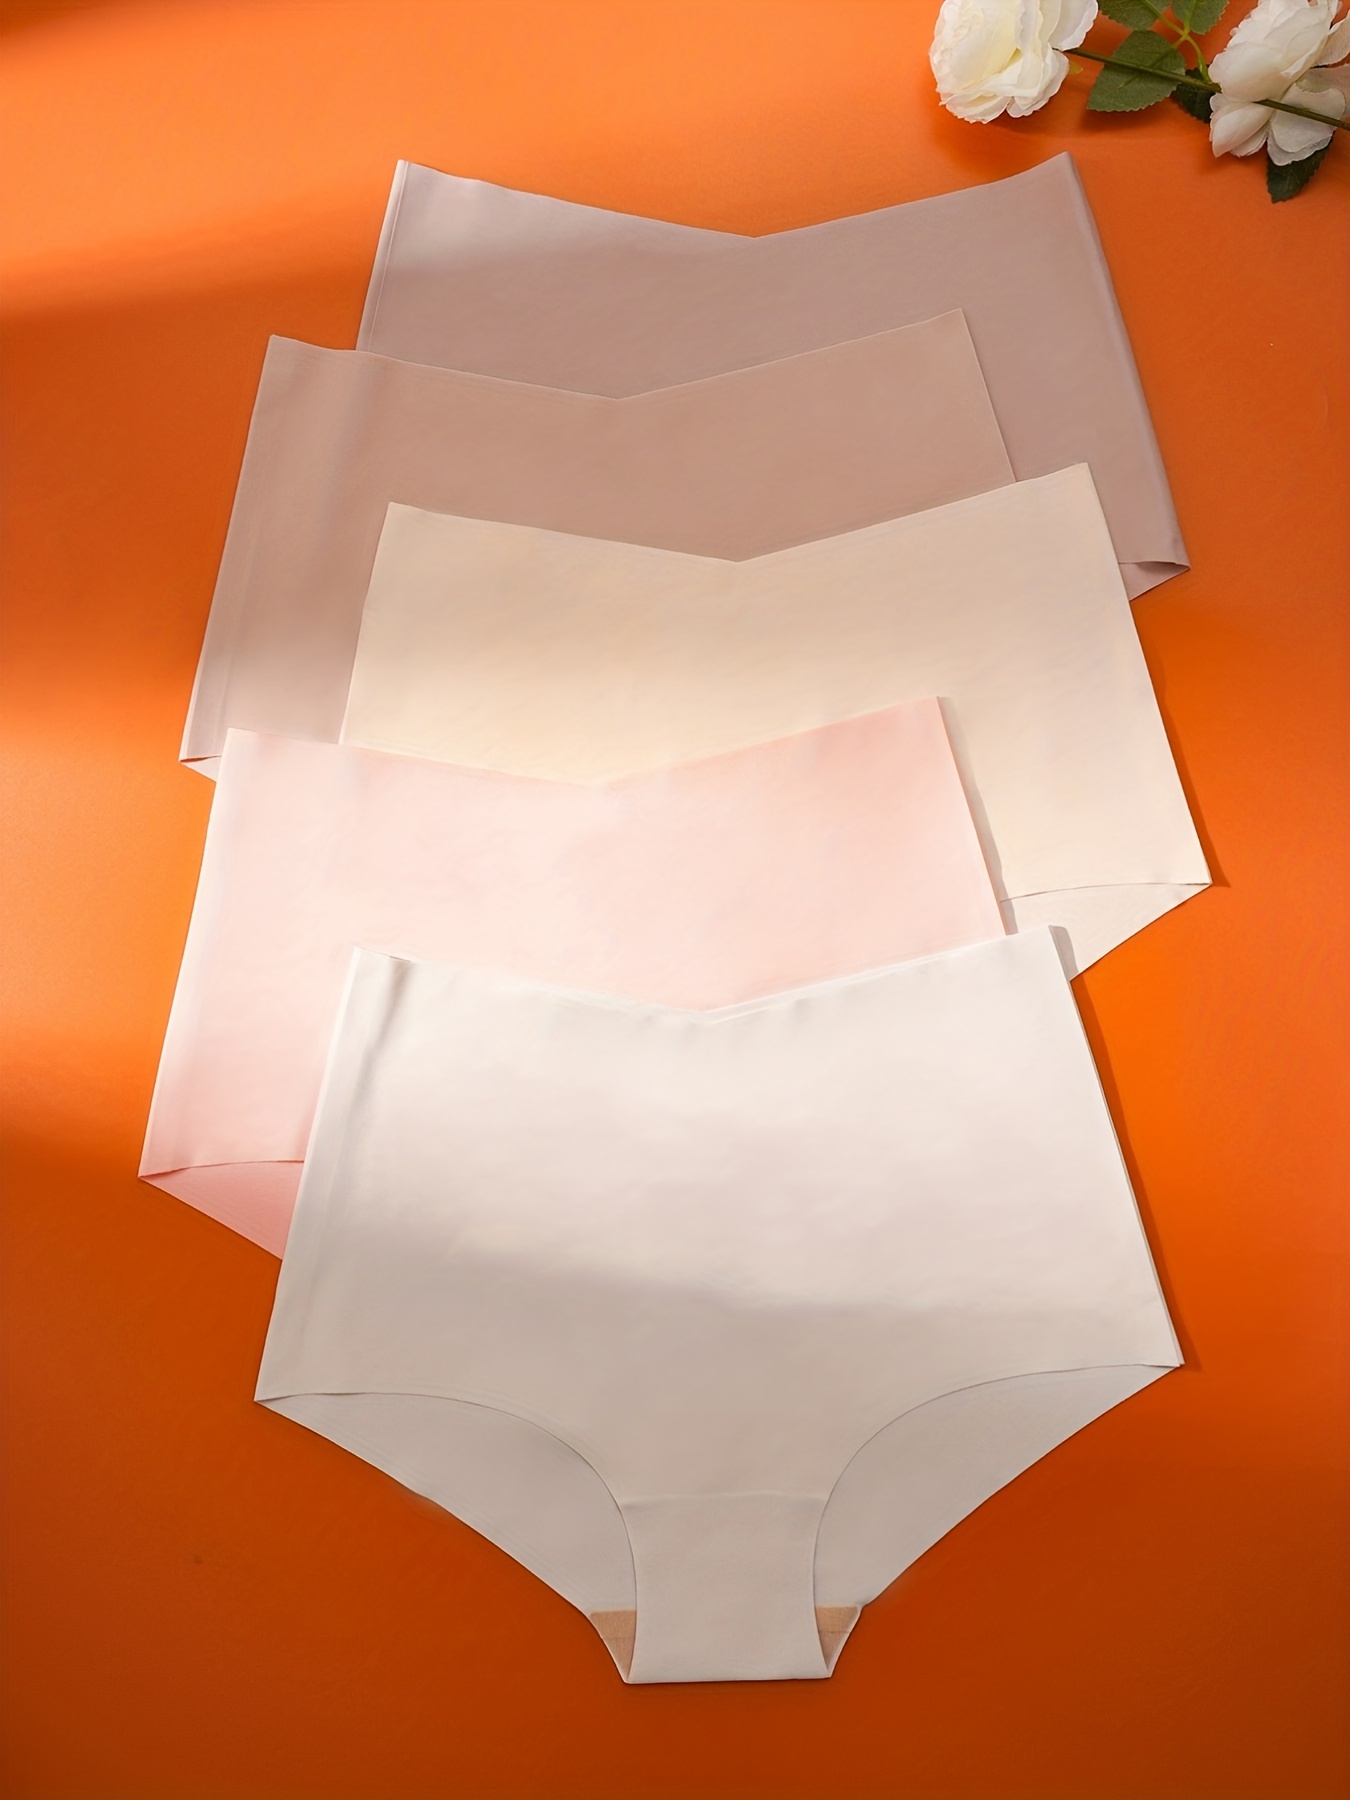 Briefs  Women's High Waisted Briefs – Lounge Underwear